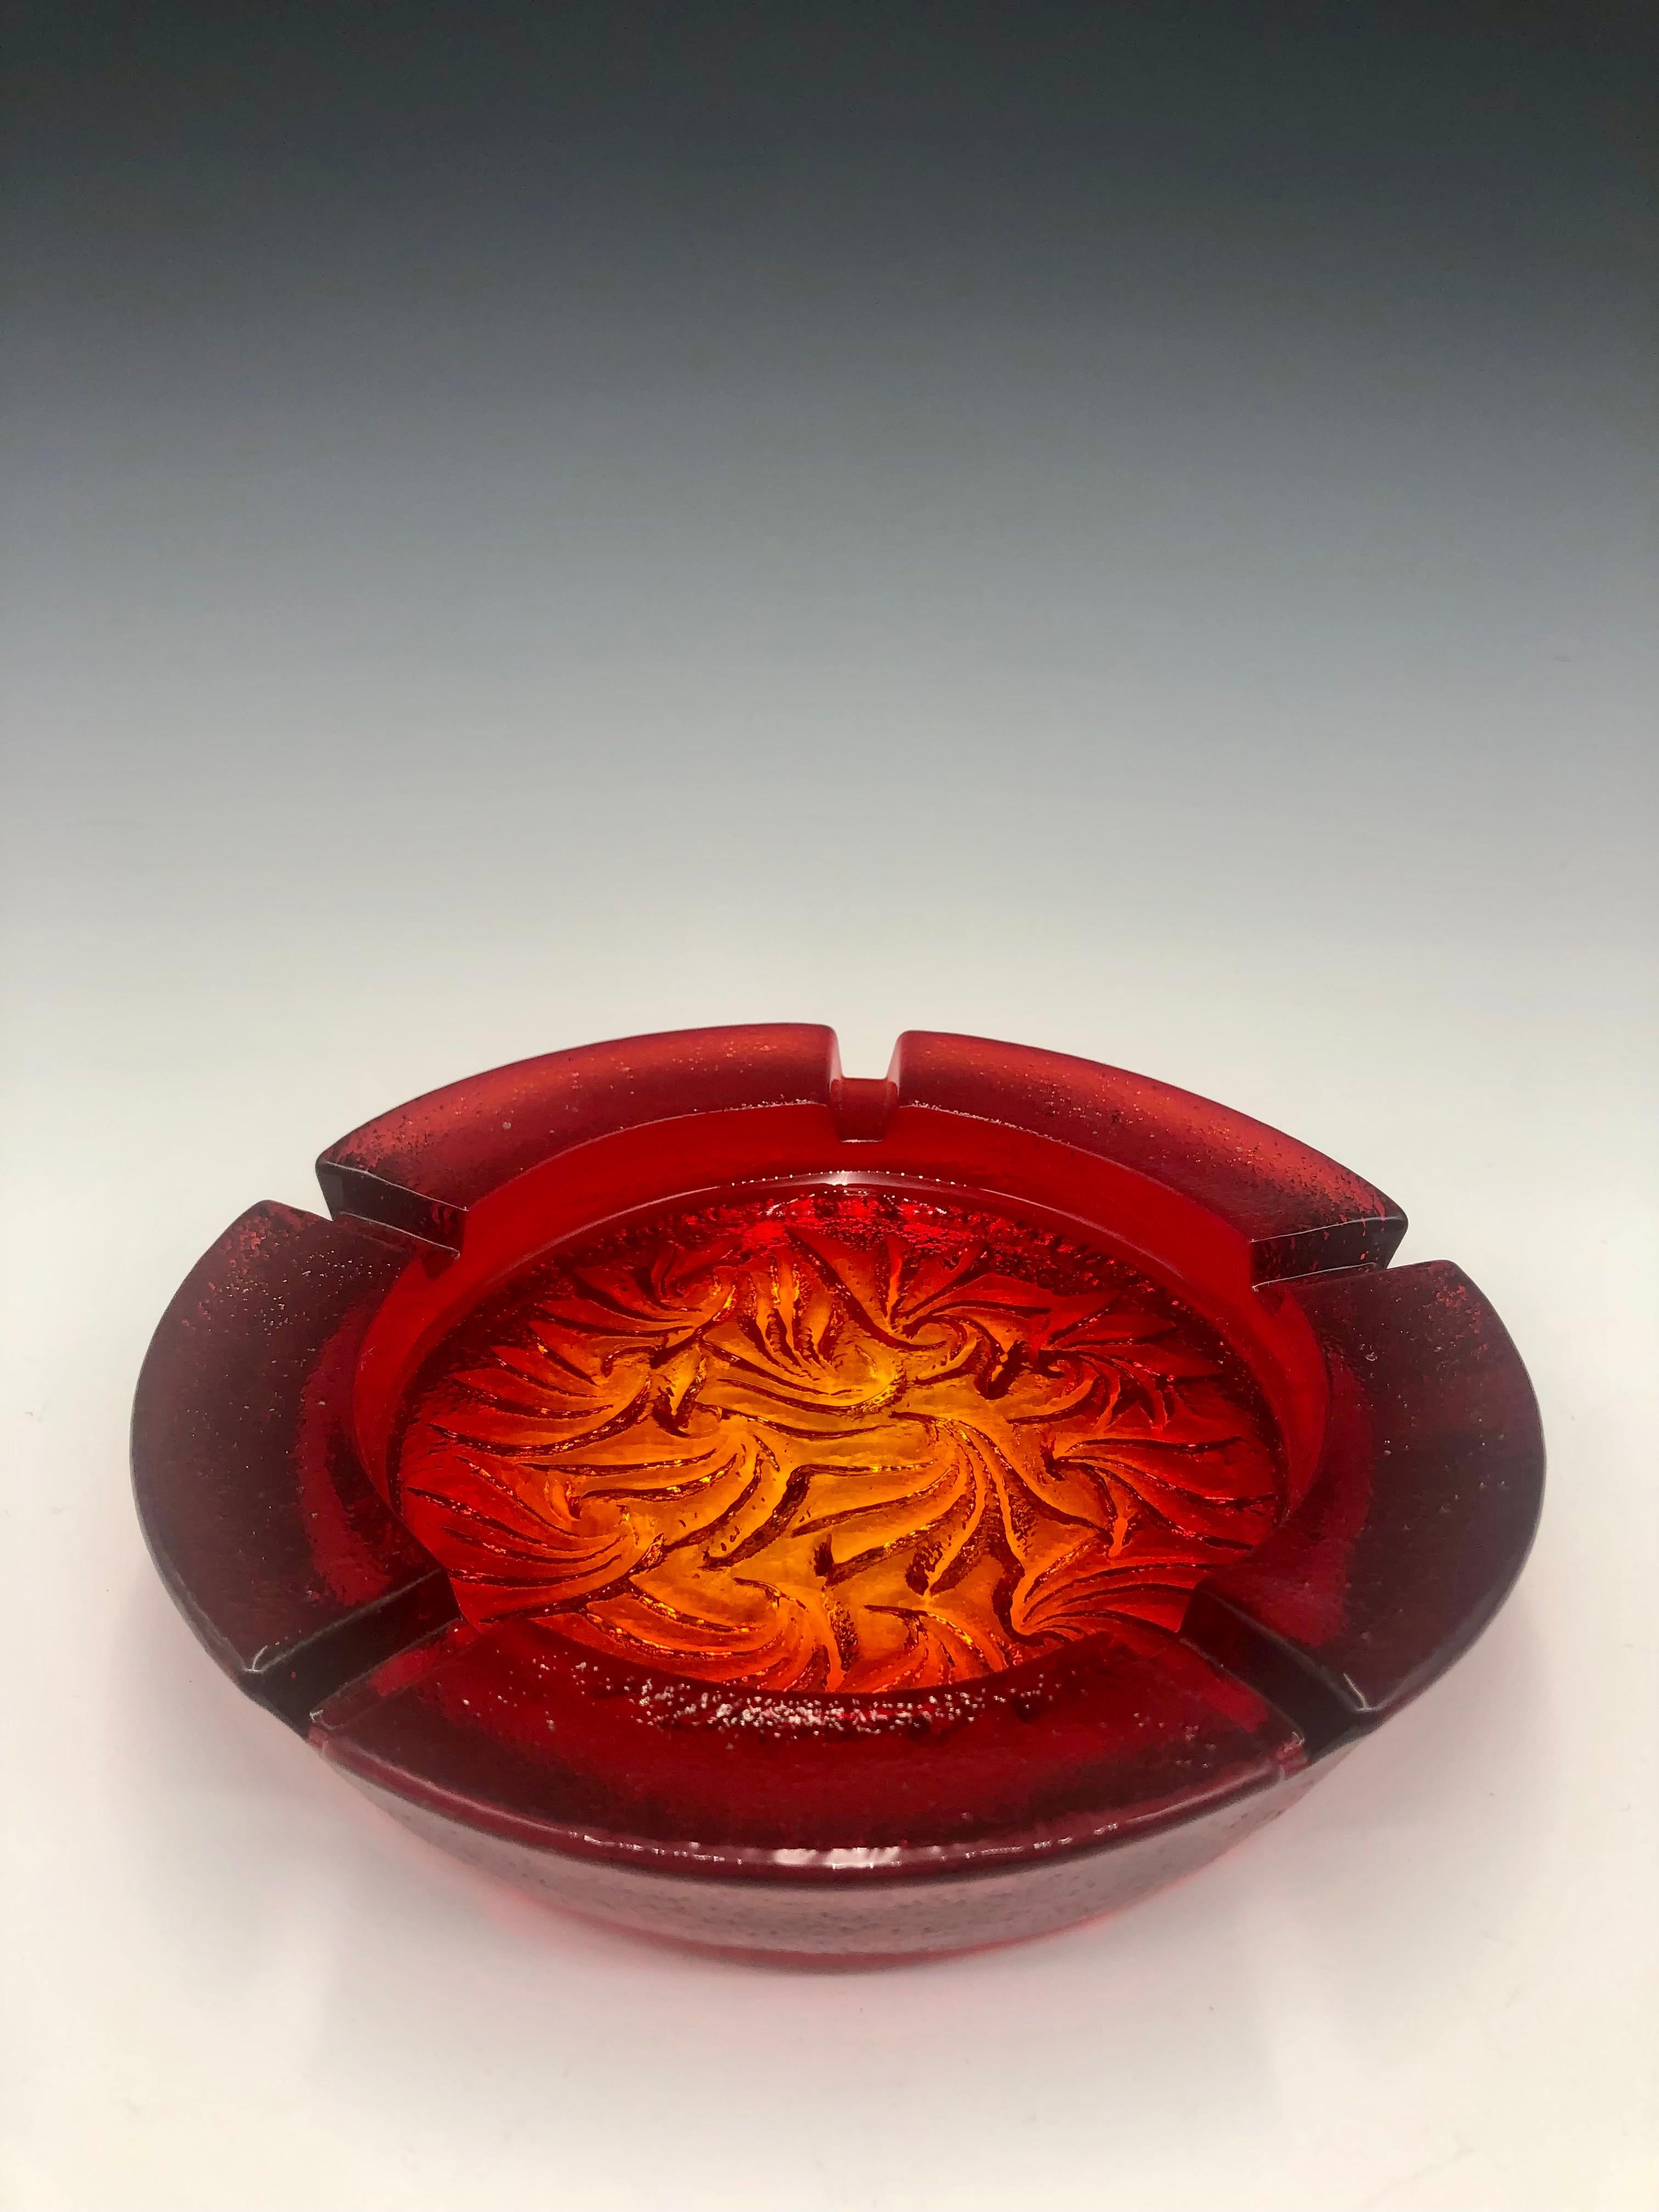 Wunderschöner roter Fauna Amberina Blenko Kunstglas-Aschenbecher aus der Mitte des Jahrhunderts, mit einem tief eingeprägten Blattmuster auf dem Boden. Intensive Amberina-Farben, die von gelb bis tief orange/rot reichen. 

Es ist in großen